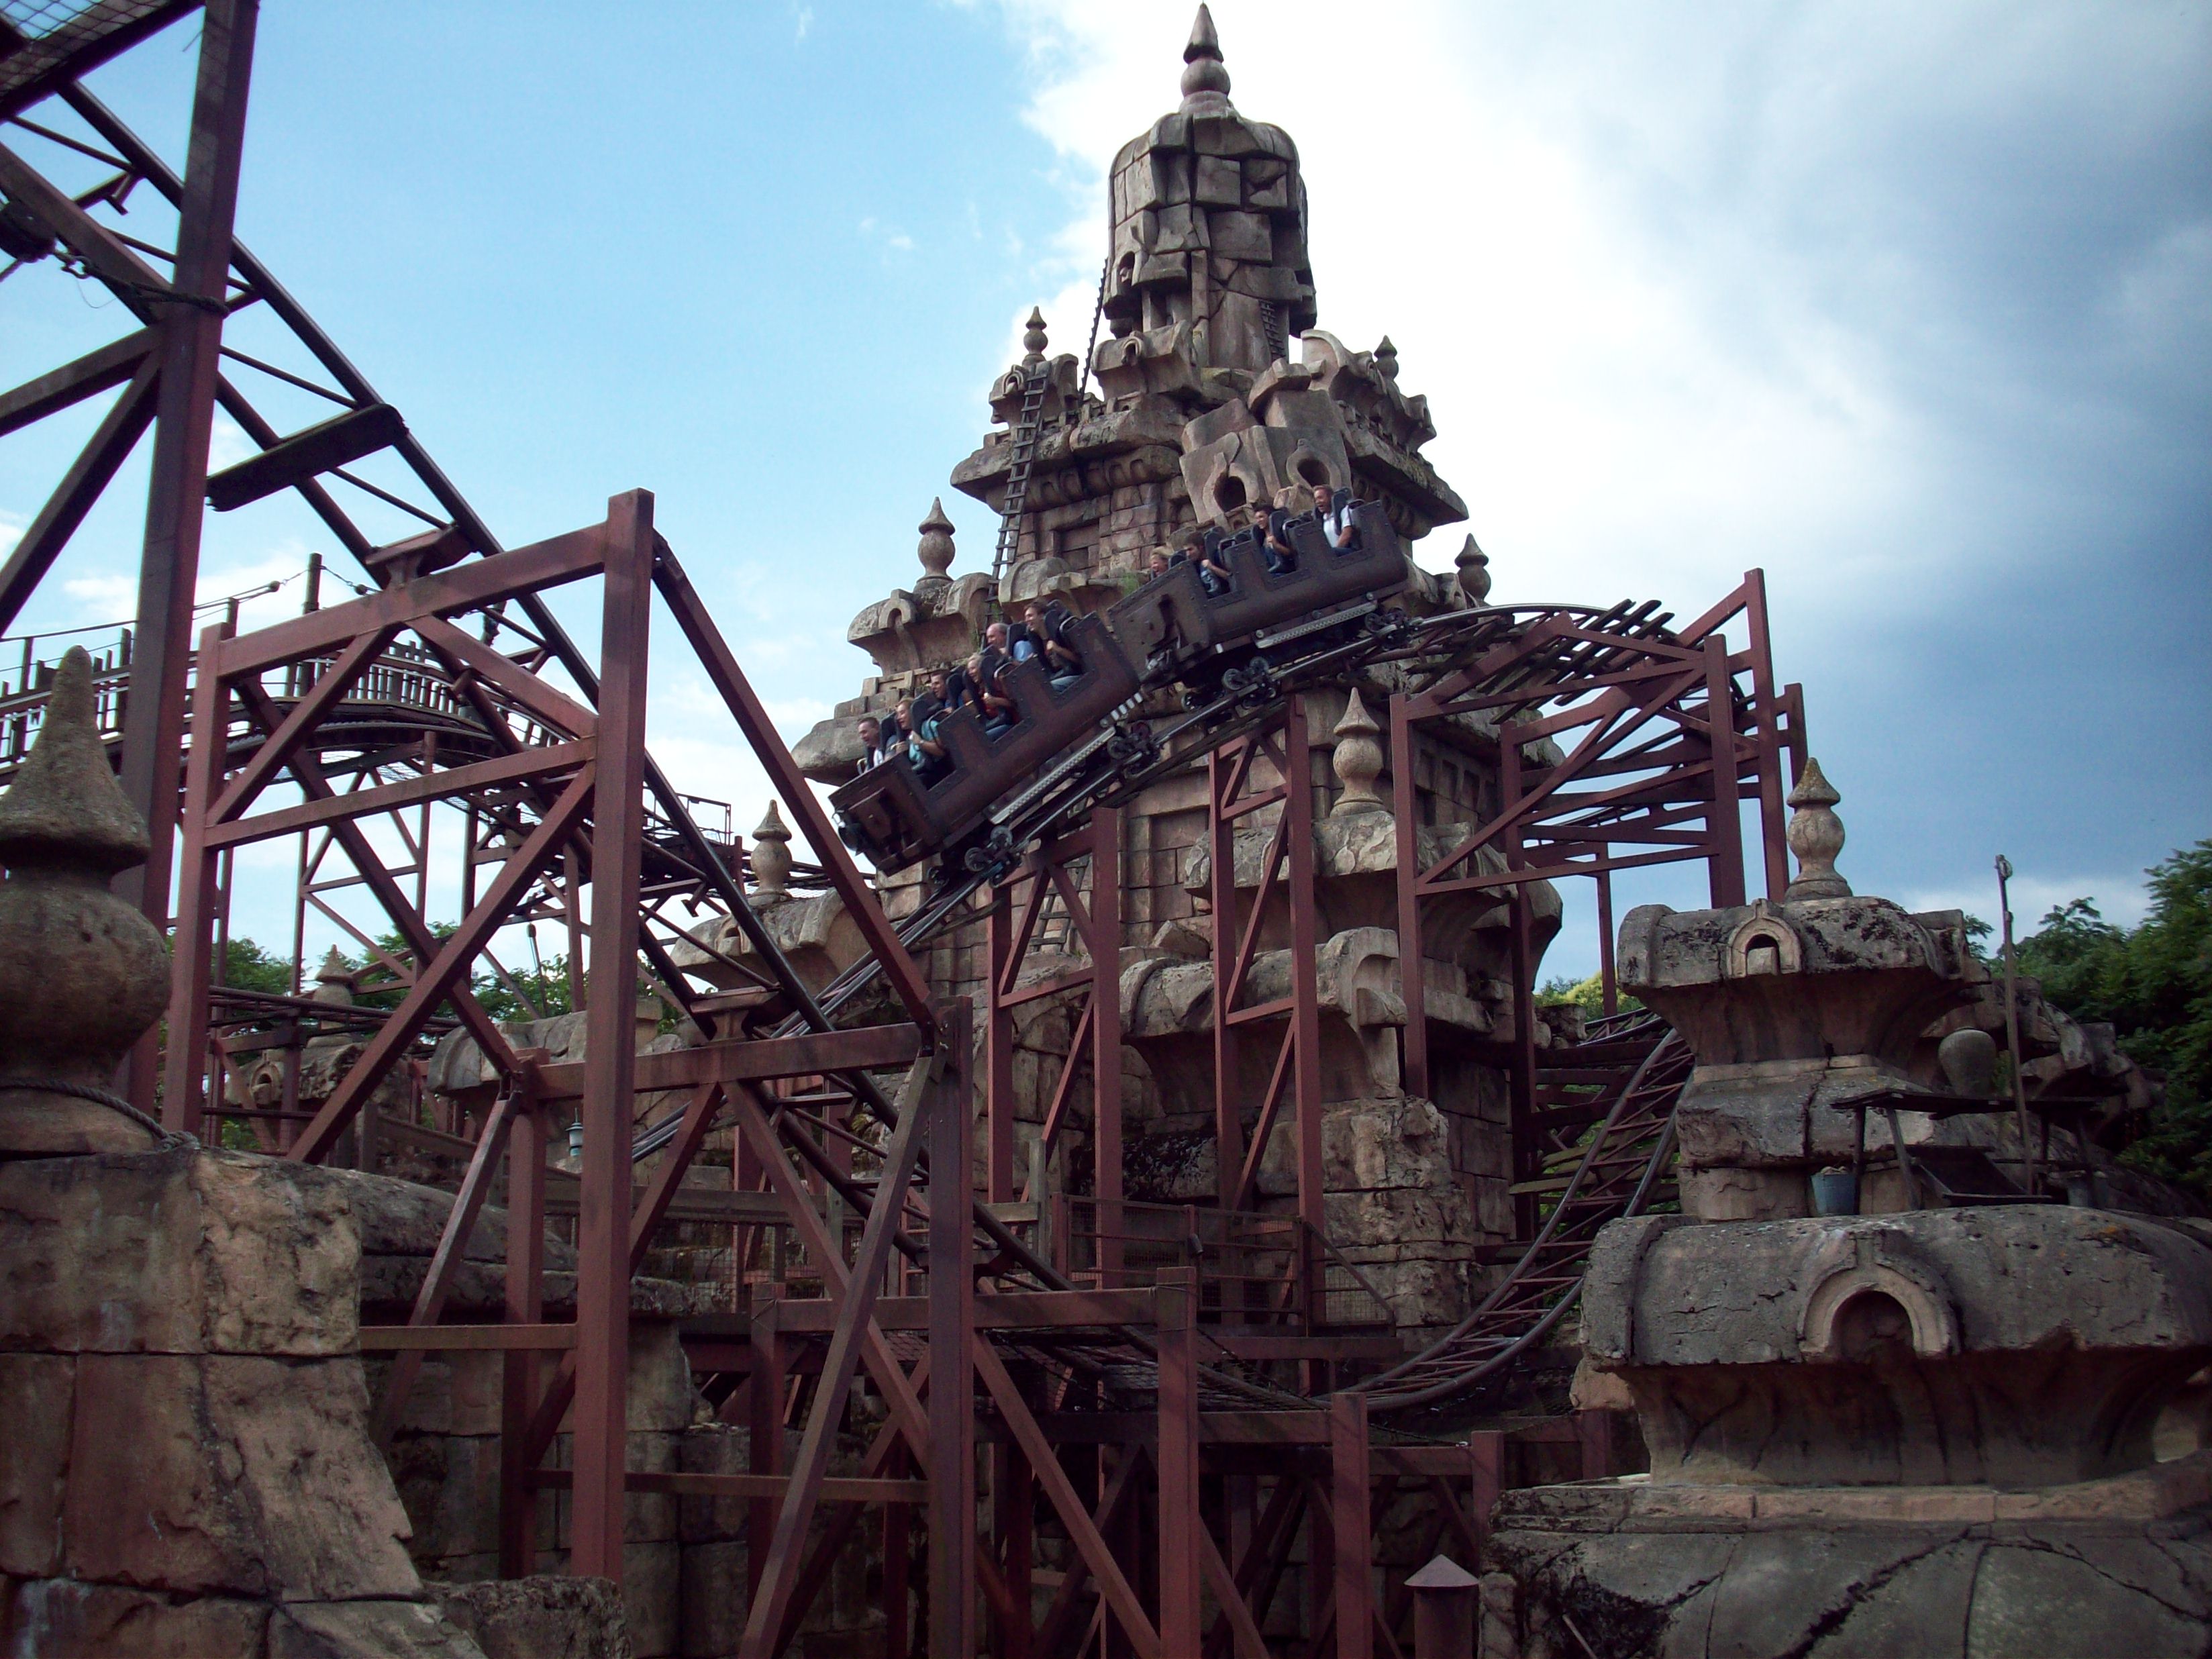 Temple of Peril, Disneyland Paris